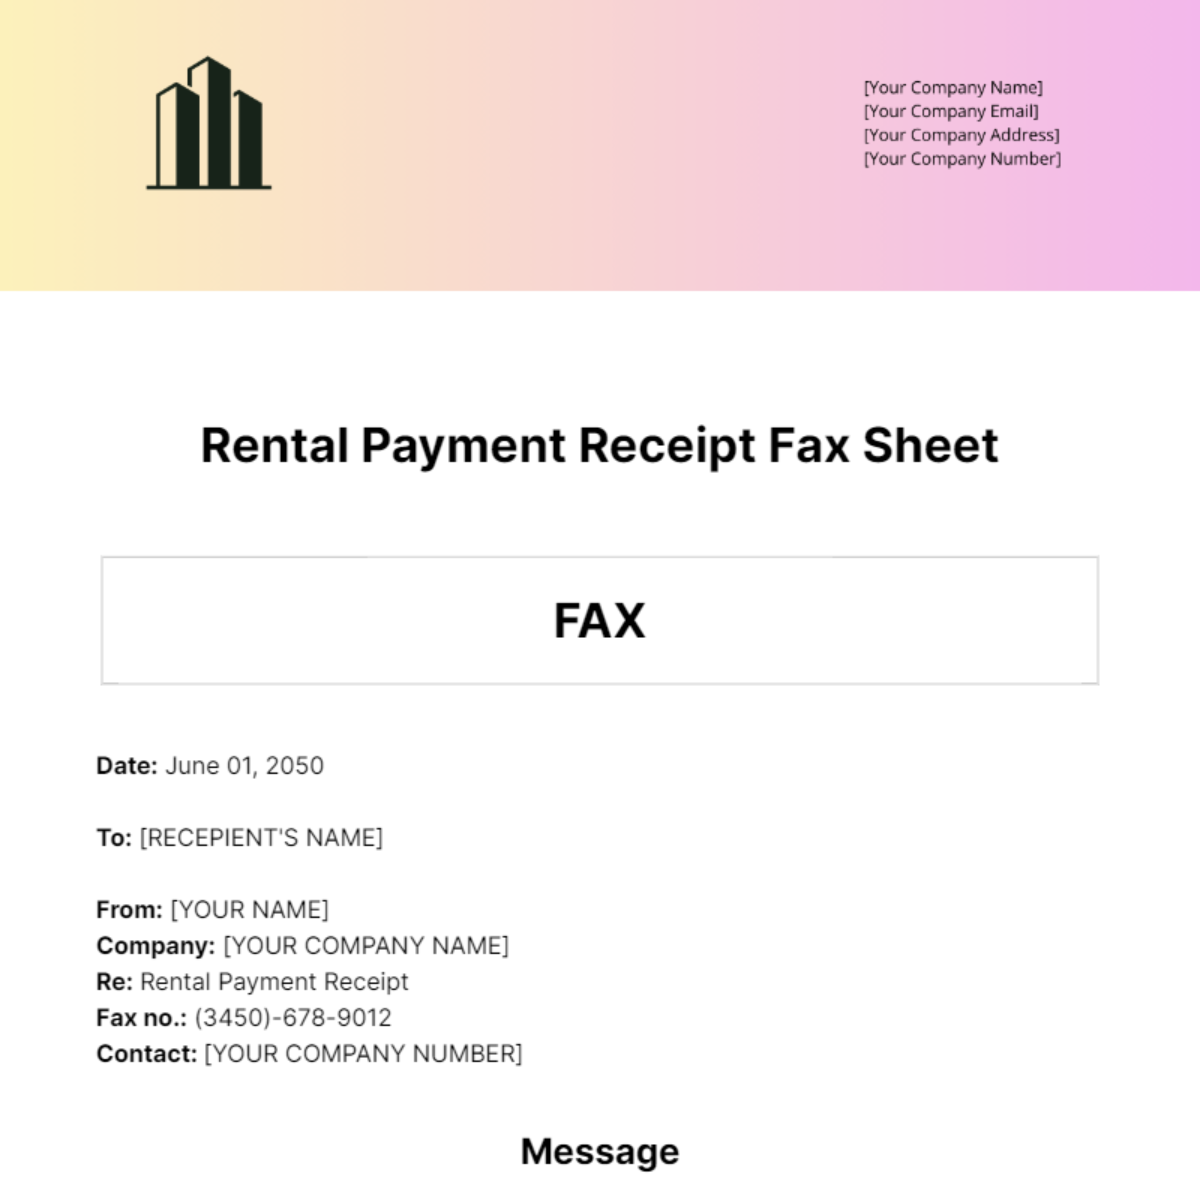 Rental Payment Receipt Fax Sheet Template